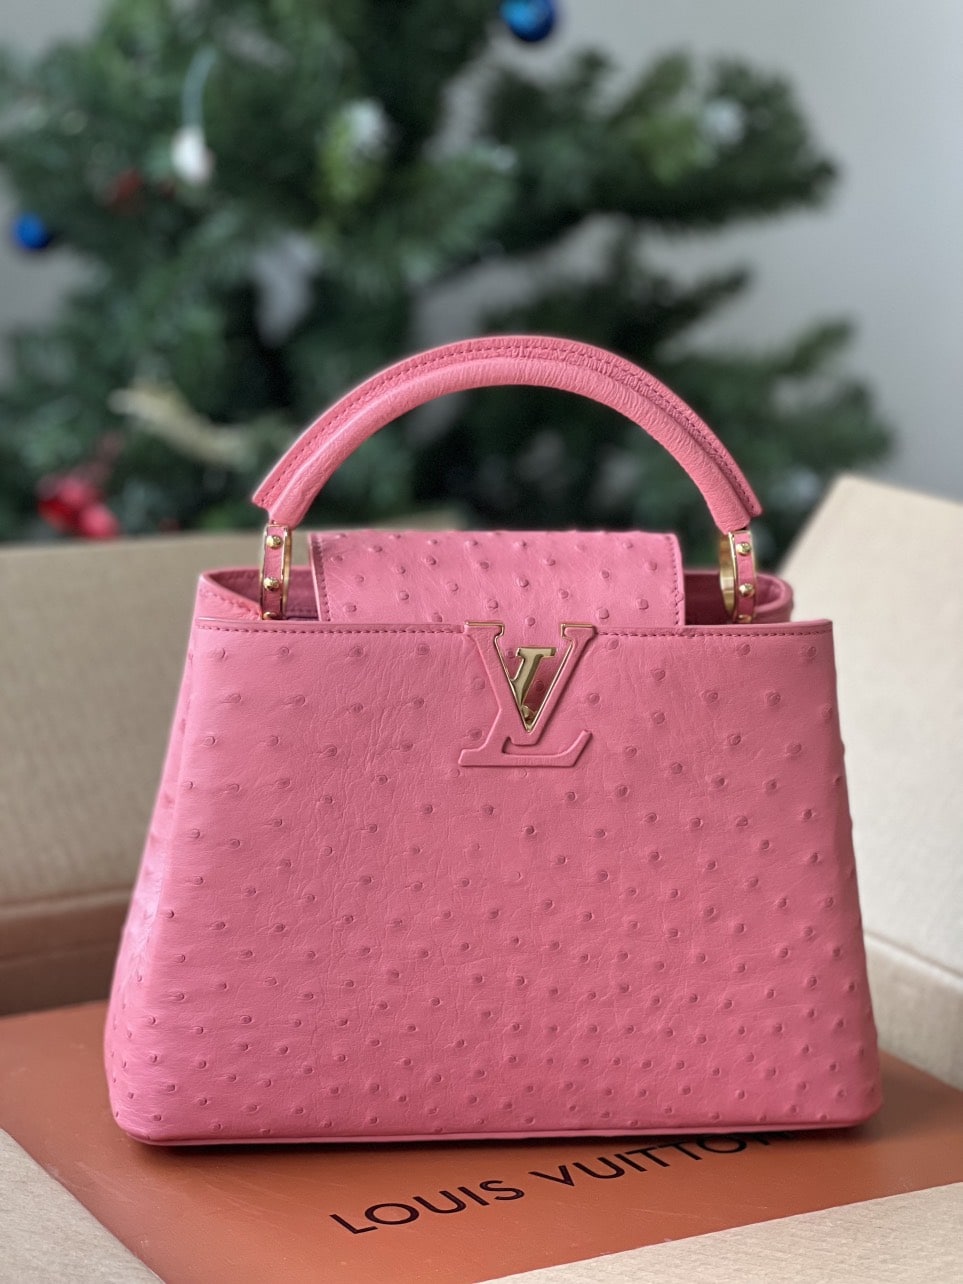 Những mẫu túi Louis Vuitton hồng cho quý cô ngọt ngào